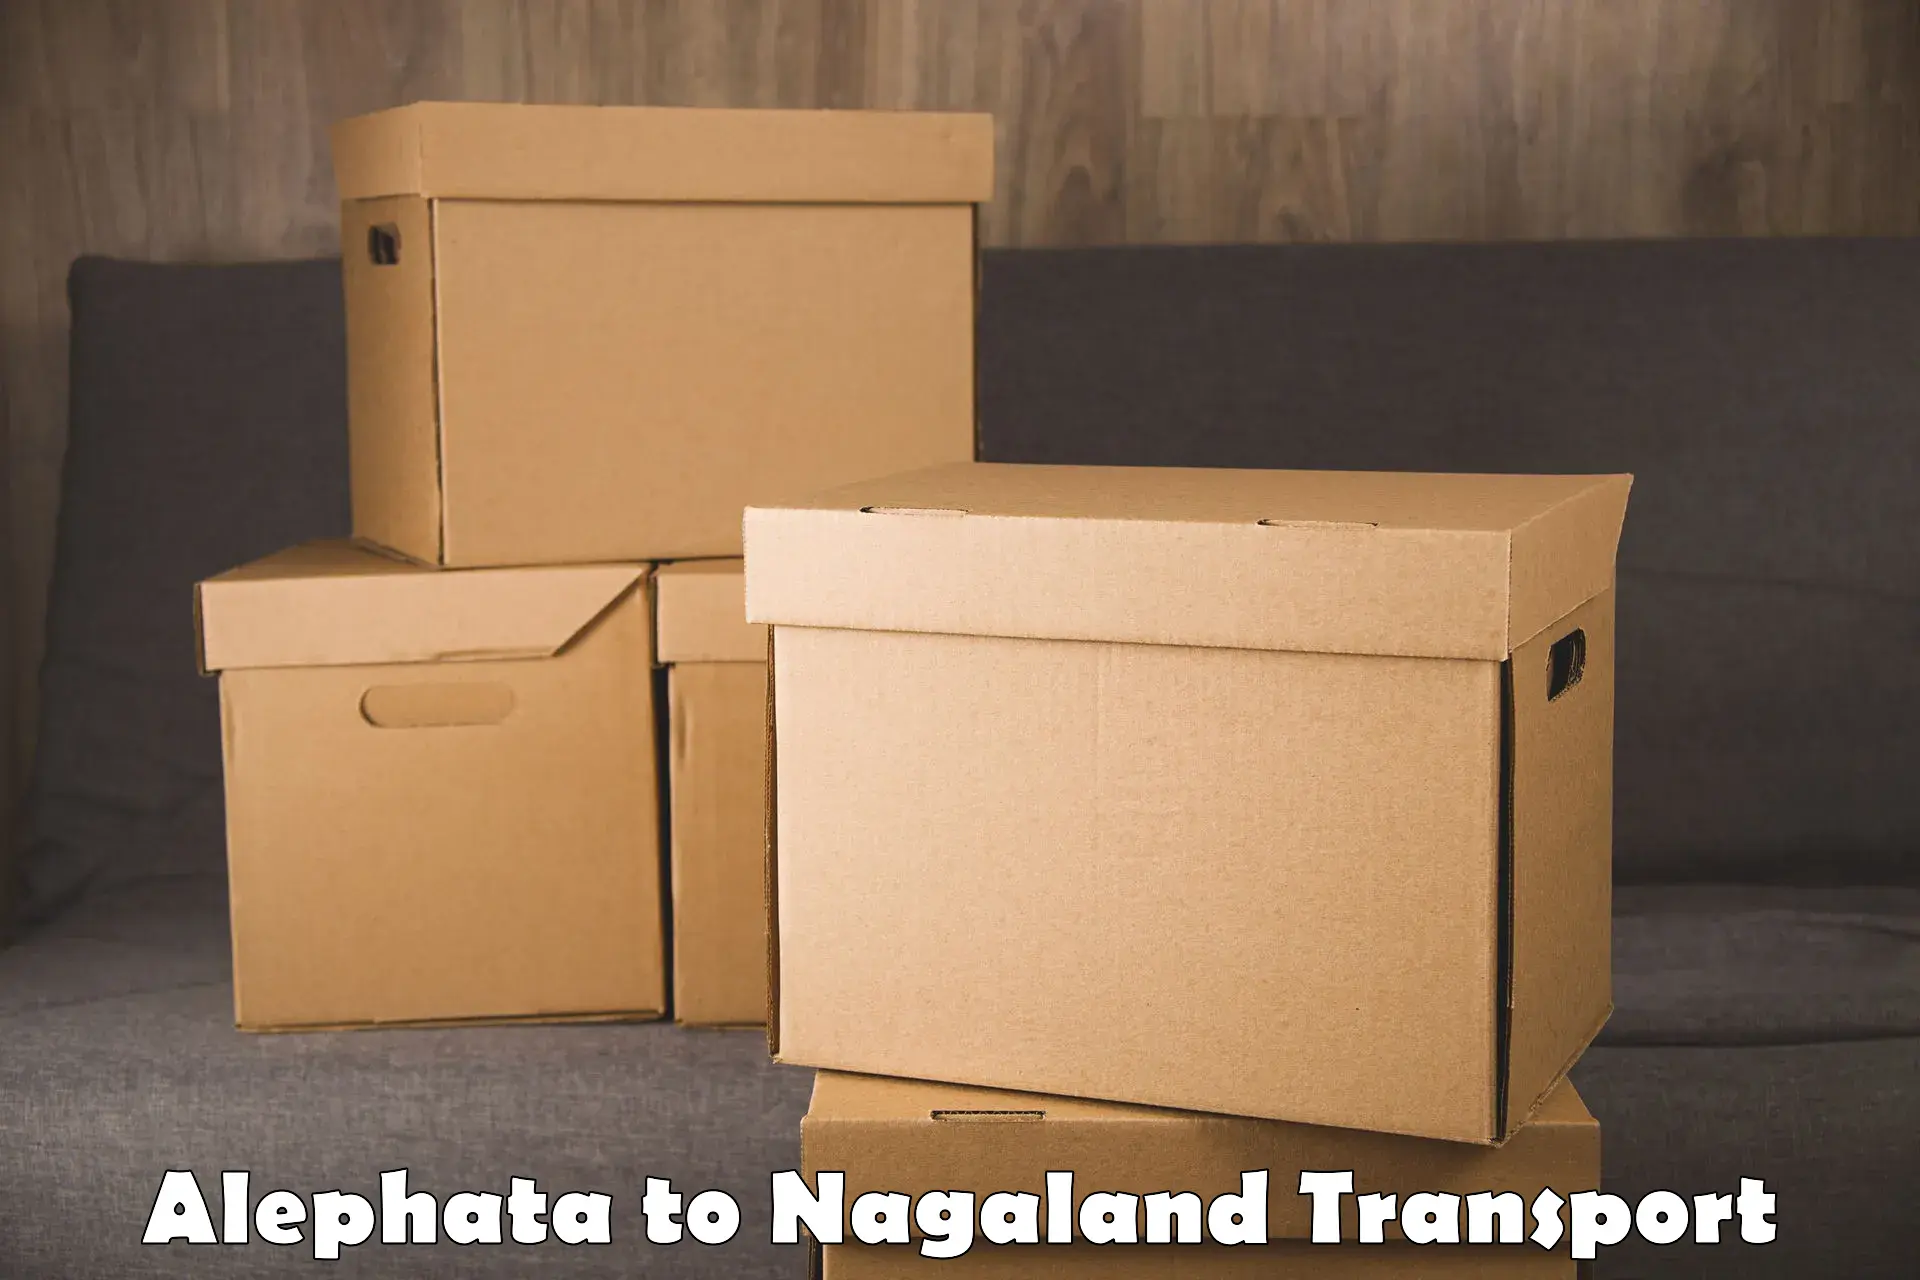 Nearest transport service Alephata to NIT Nagaland